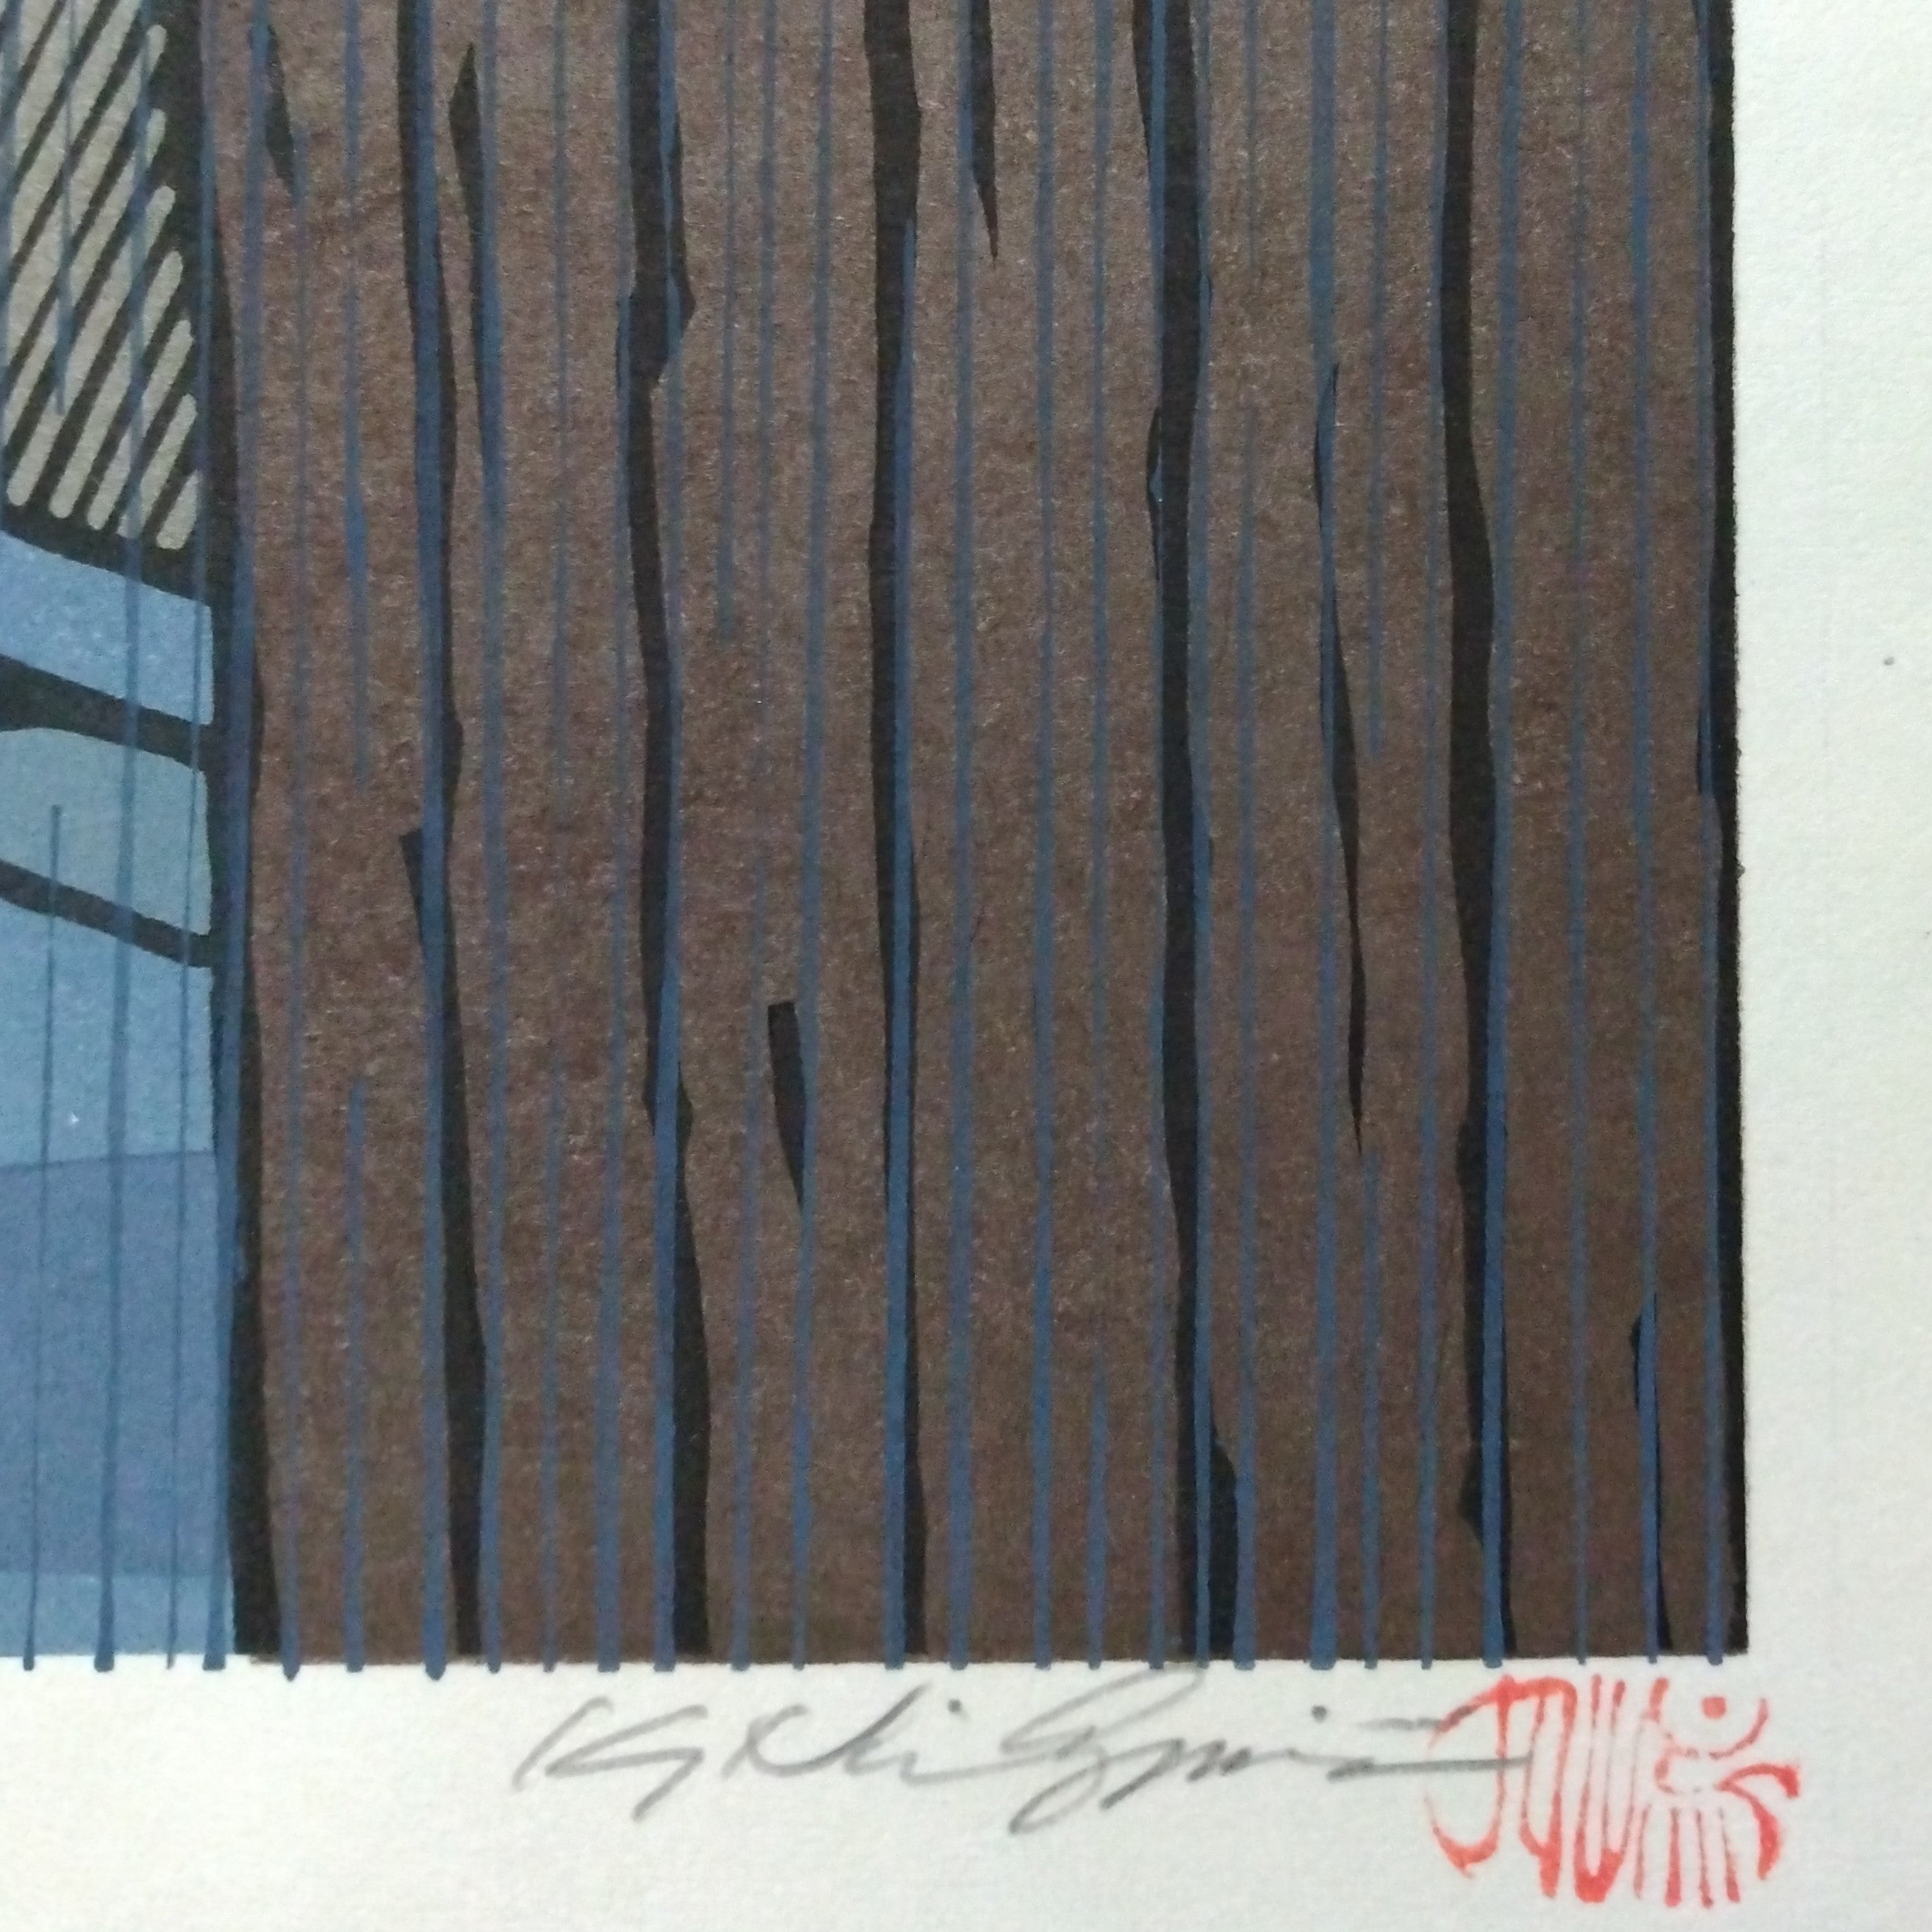 Woodblock Print by Katsuyuki Nishijima, "Rain in Fushimi" (Fushimi no Ame)